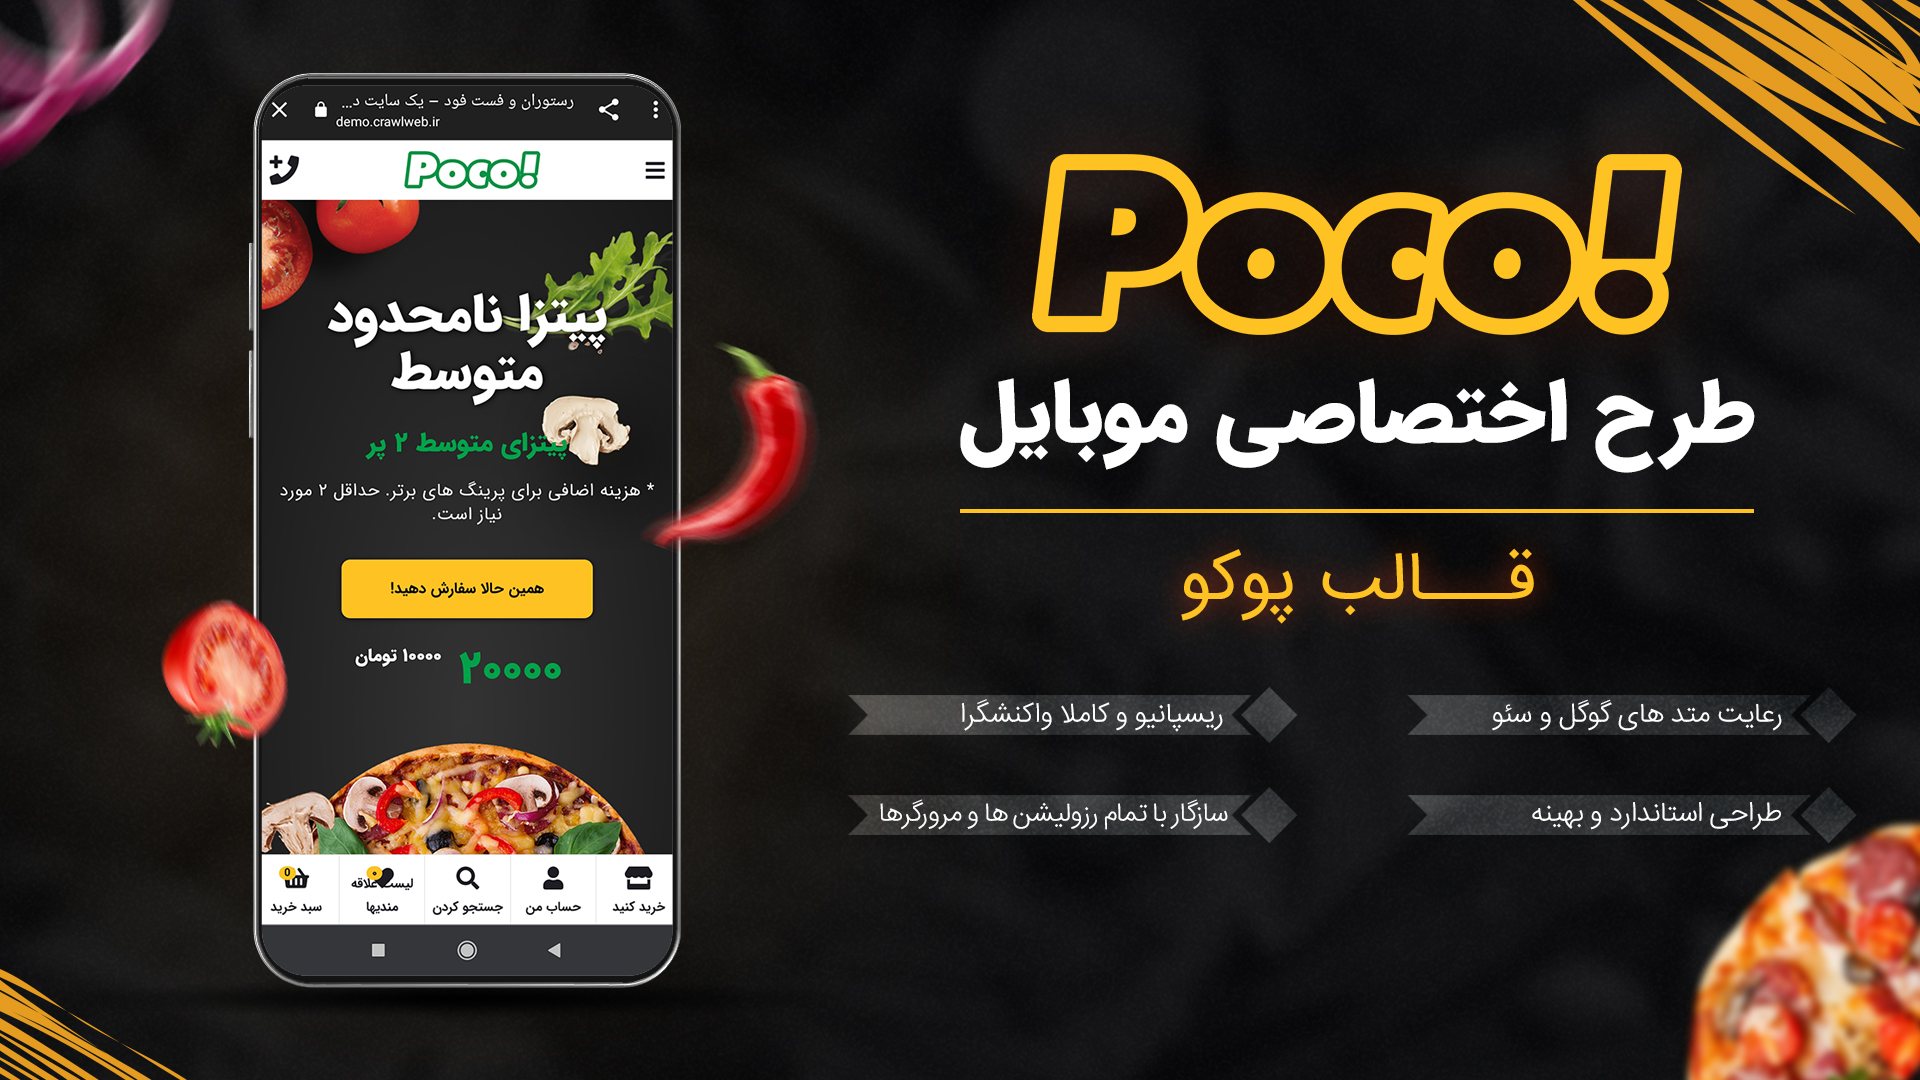 قالب Poco با طراحی ختصاصی برای موبایل